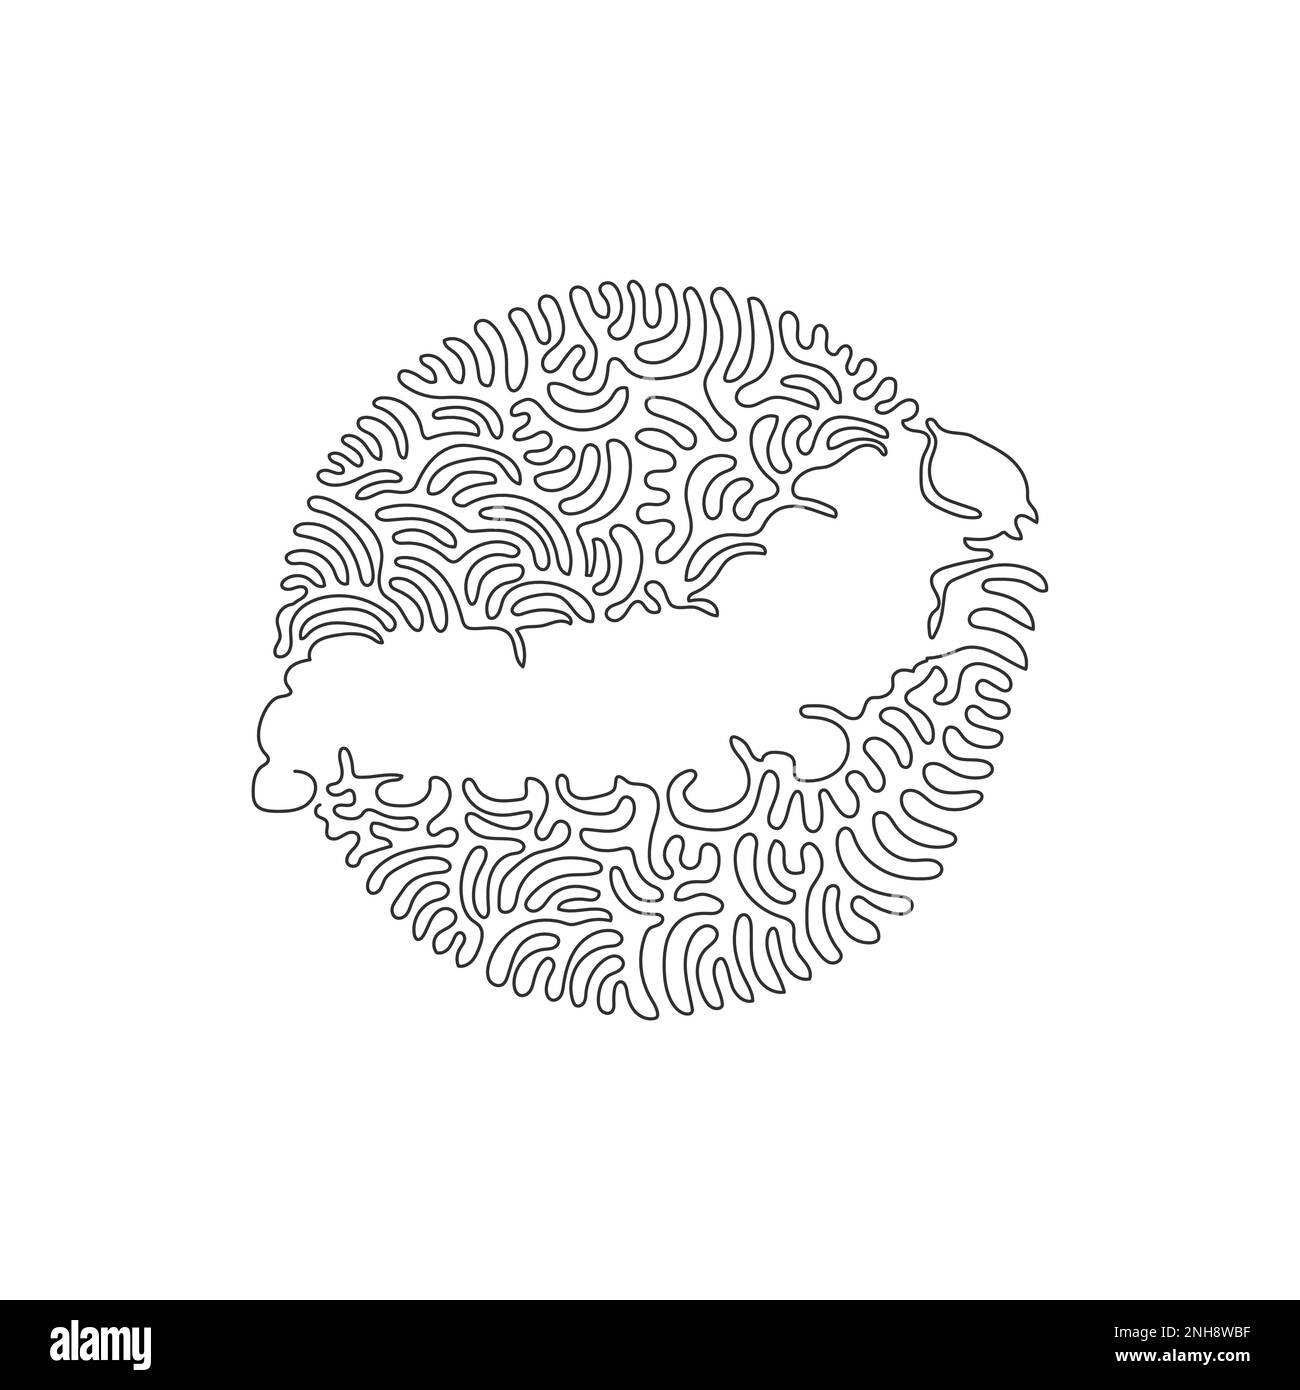 Durchgehende einzeilige Zeichnung einer abstrakten Laubraupe im Kreis. Einzeilige bearbeitbare Vektordarstellung der Raupenkopfkapsel Stock Vektor